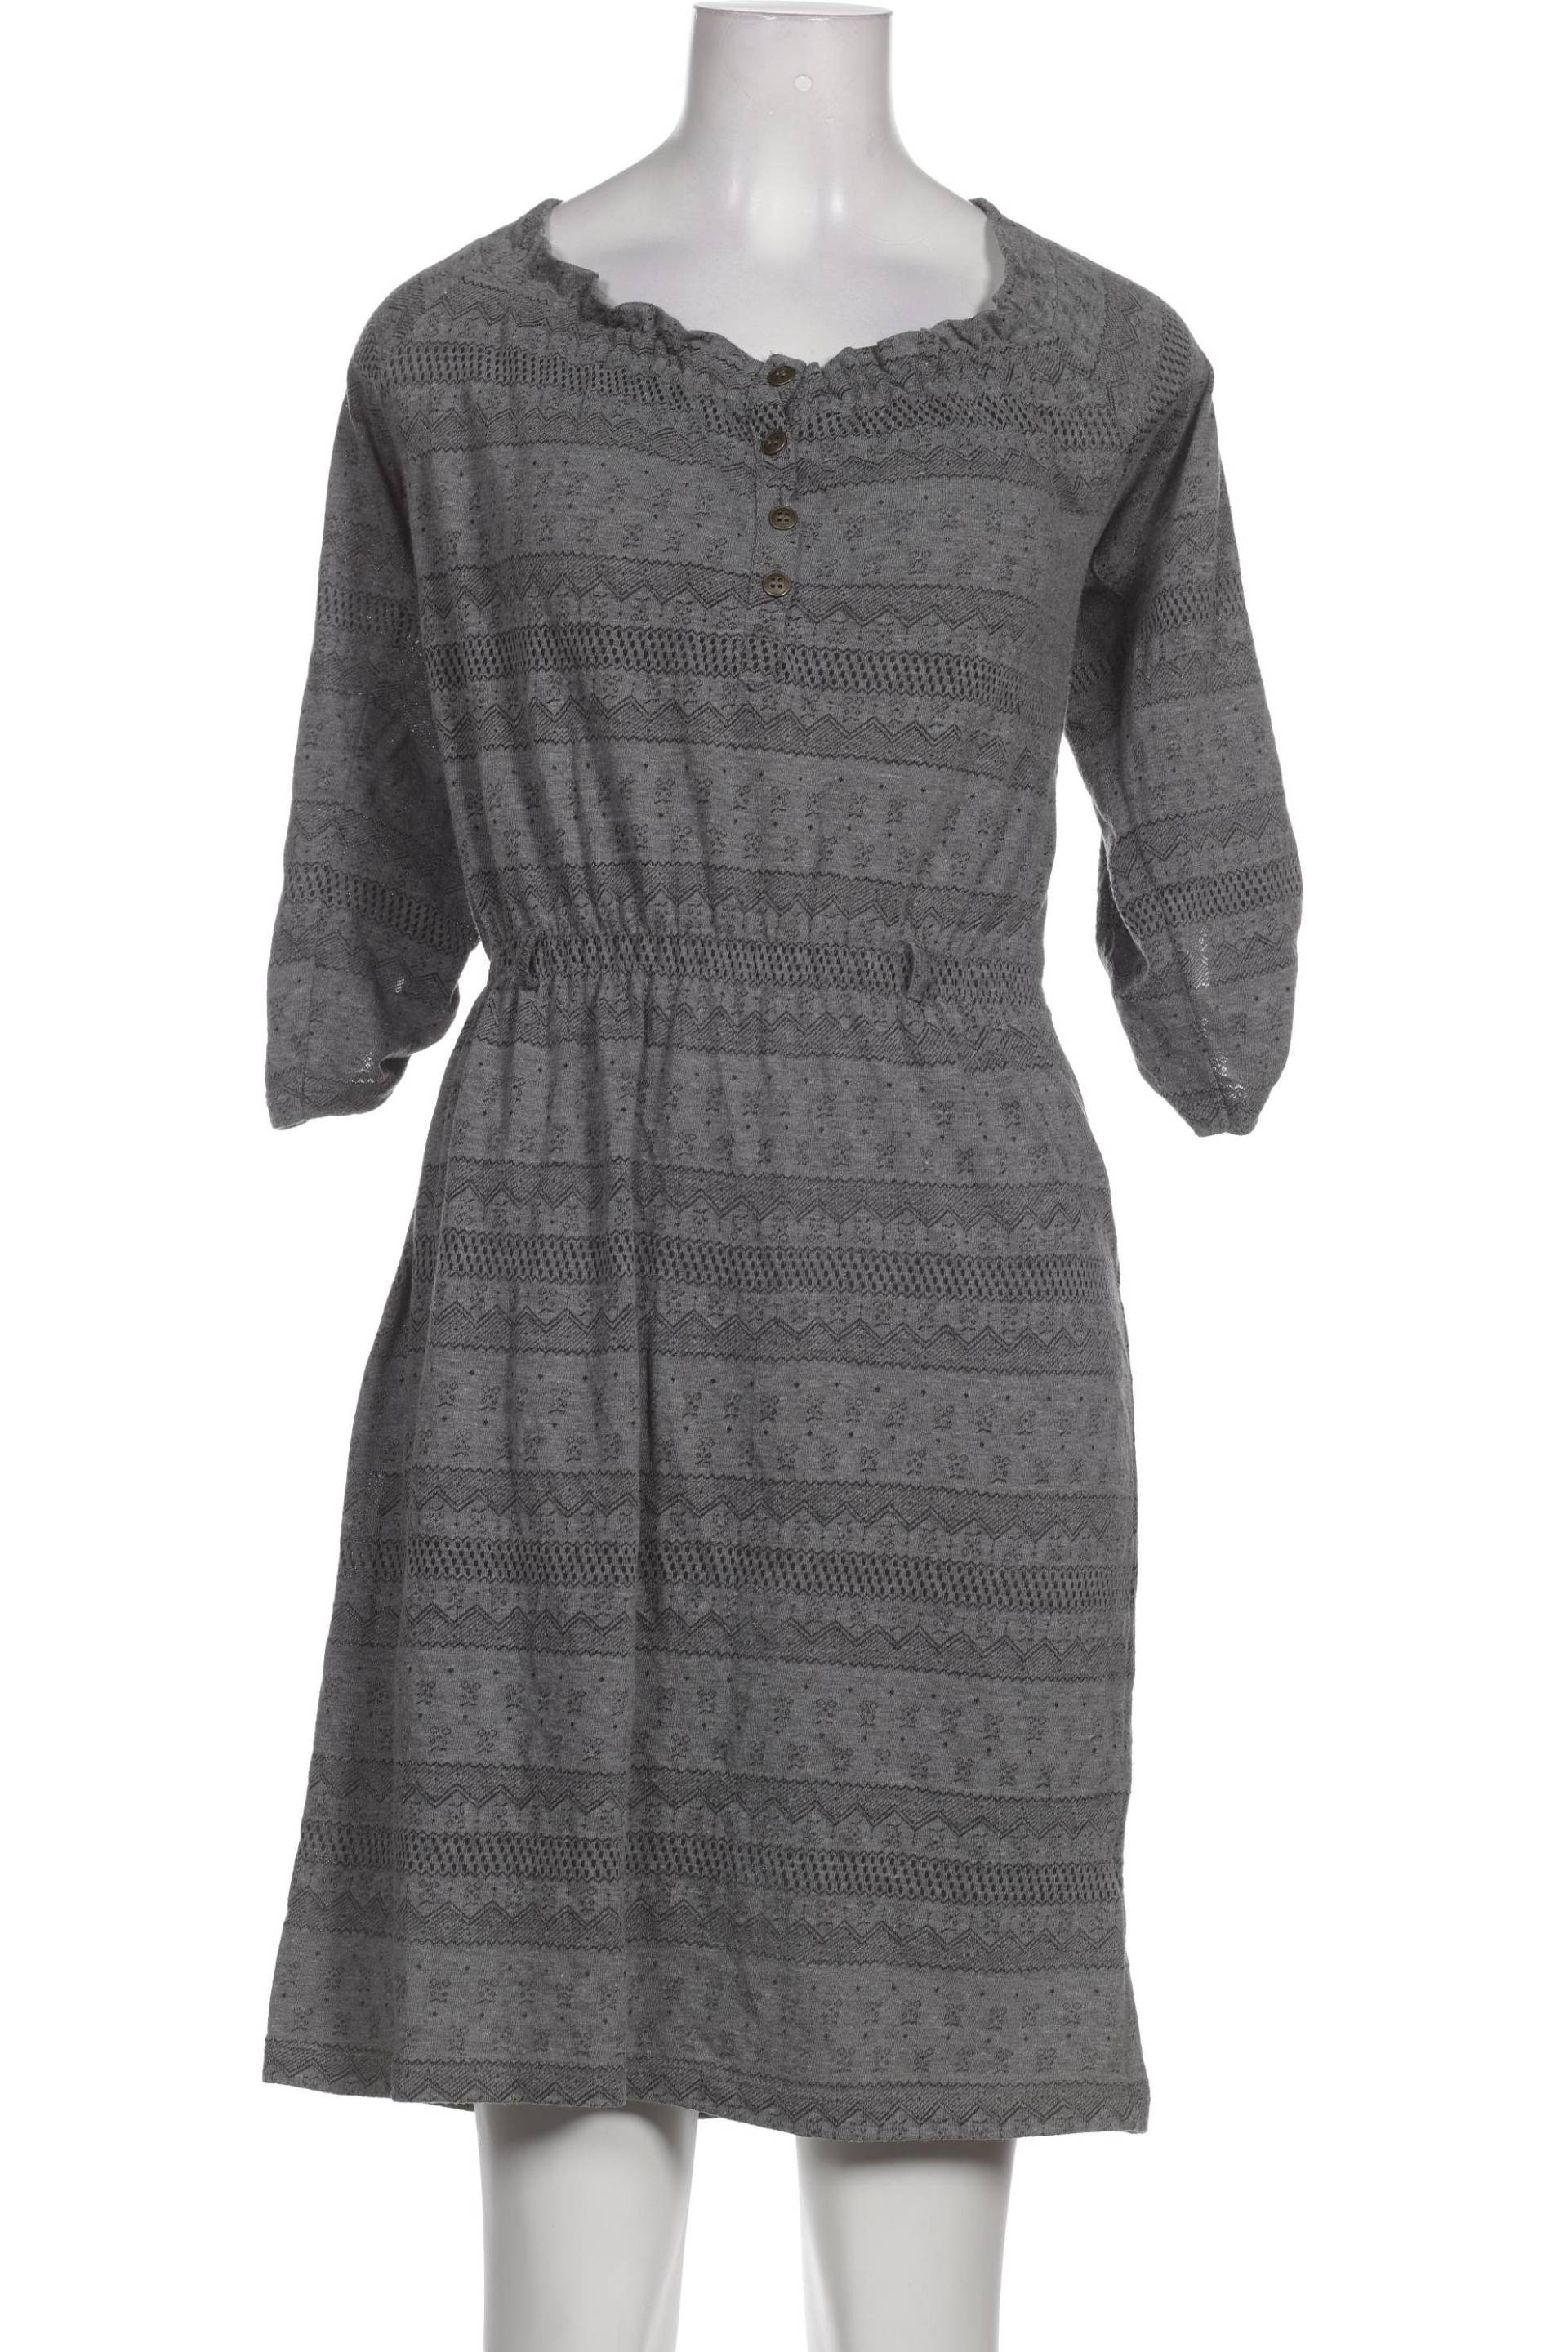 Zara Damen Kleid, grau, Gr. 36 von ZARA